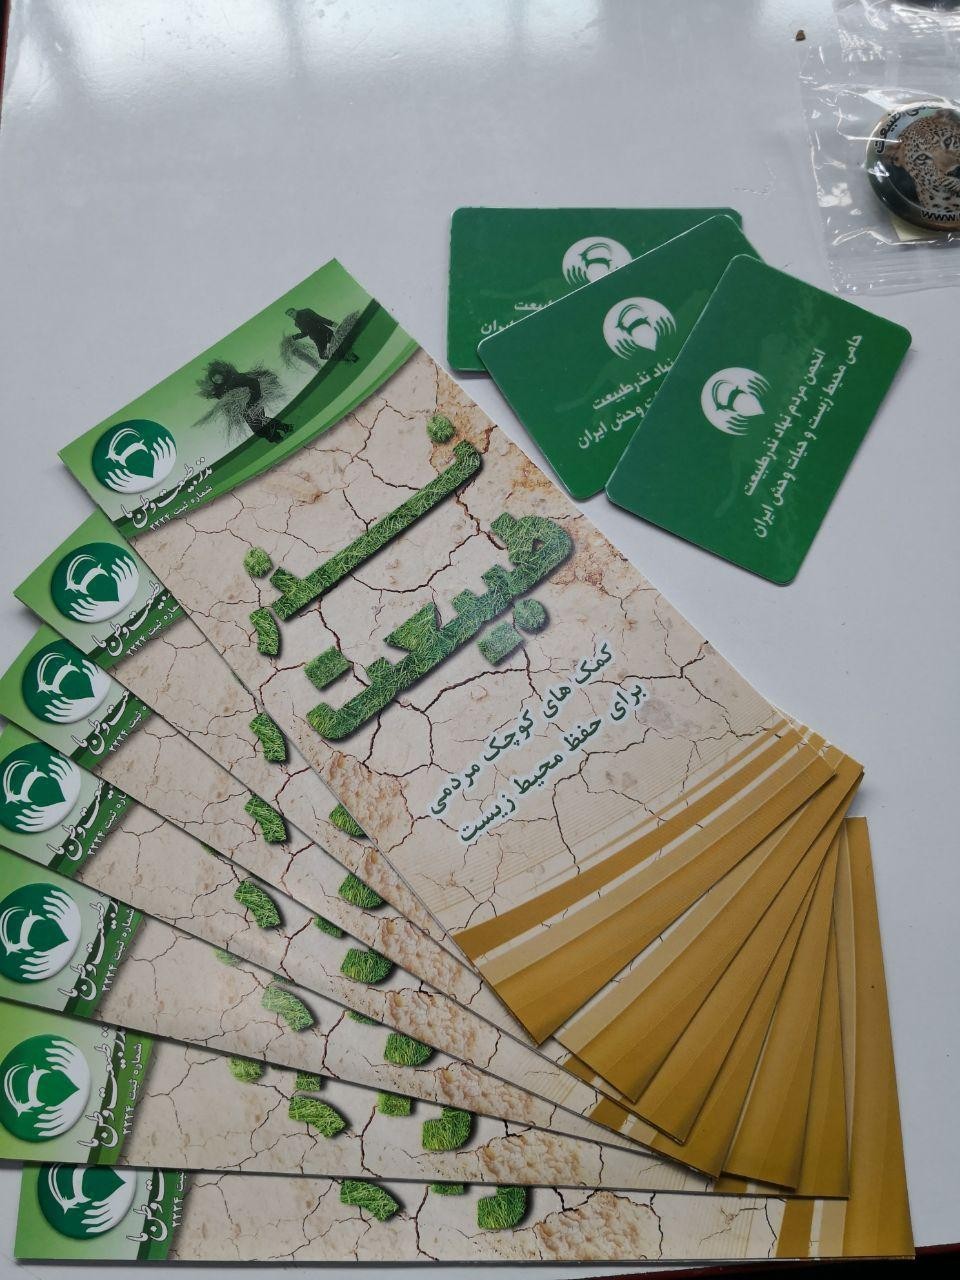 نذرطبیعت در هجدهمین نمایشگاه بین المللی محیط زیست تهران شرکت کرد.